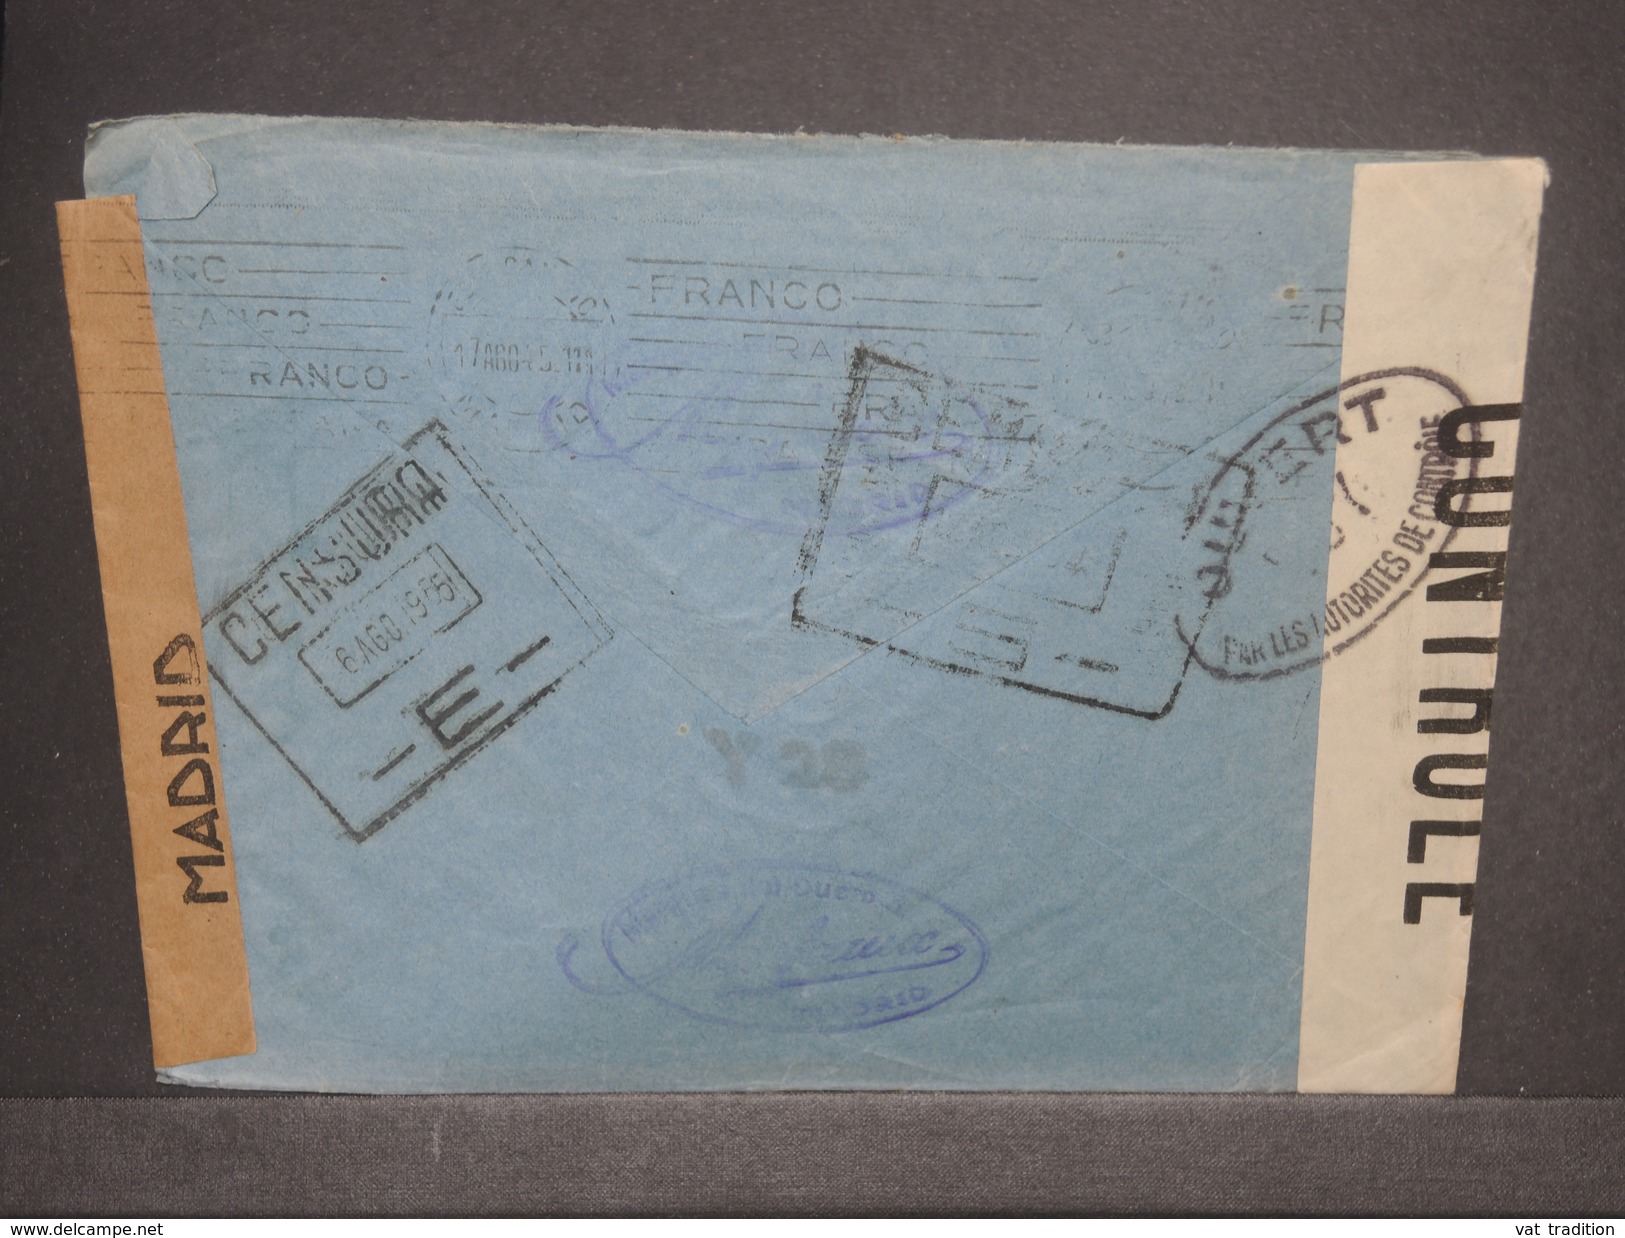 ESPAGNE - Enveloppe De Madrid En 1945 Pour Paris Avec Contrôle Postal, + Censure De Madrid - L 7365 - Nationalistische Zensur